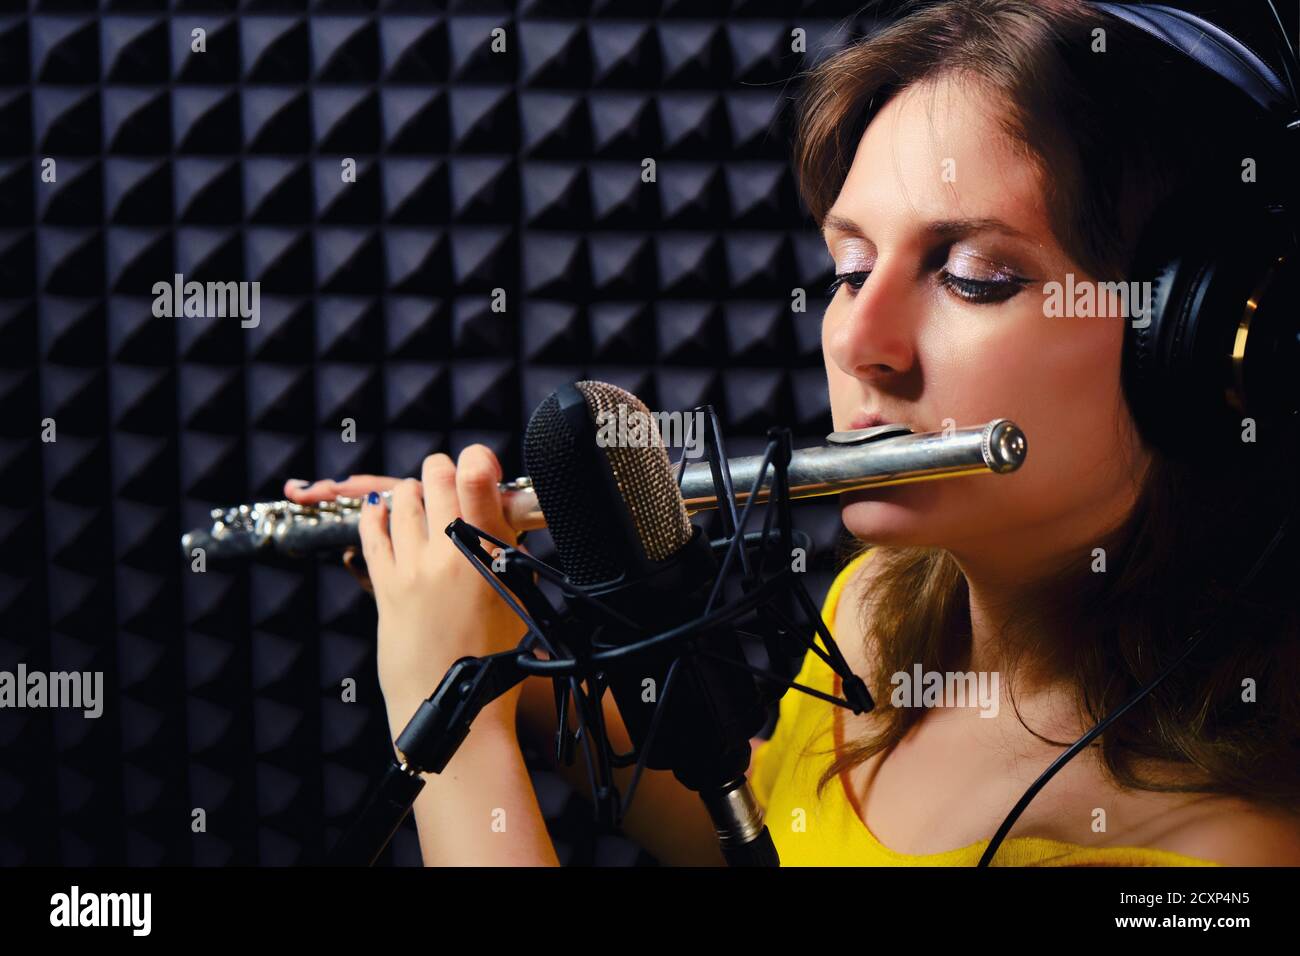 Le flûte joue dans un studio de musique, un espace de copie. Enregistrez des instruments de musique à vent avec un microphone professionnel. Femme dans le casque flûtiste Playi Banque D'Images